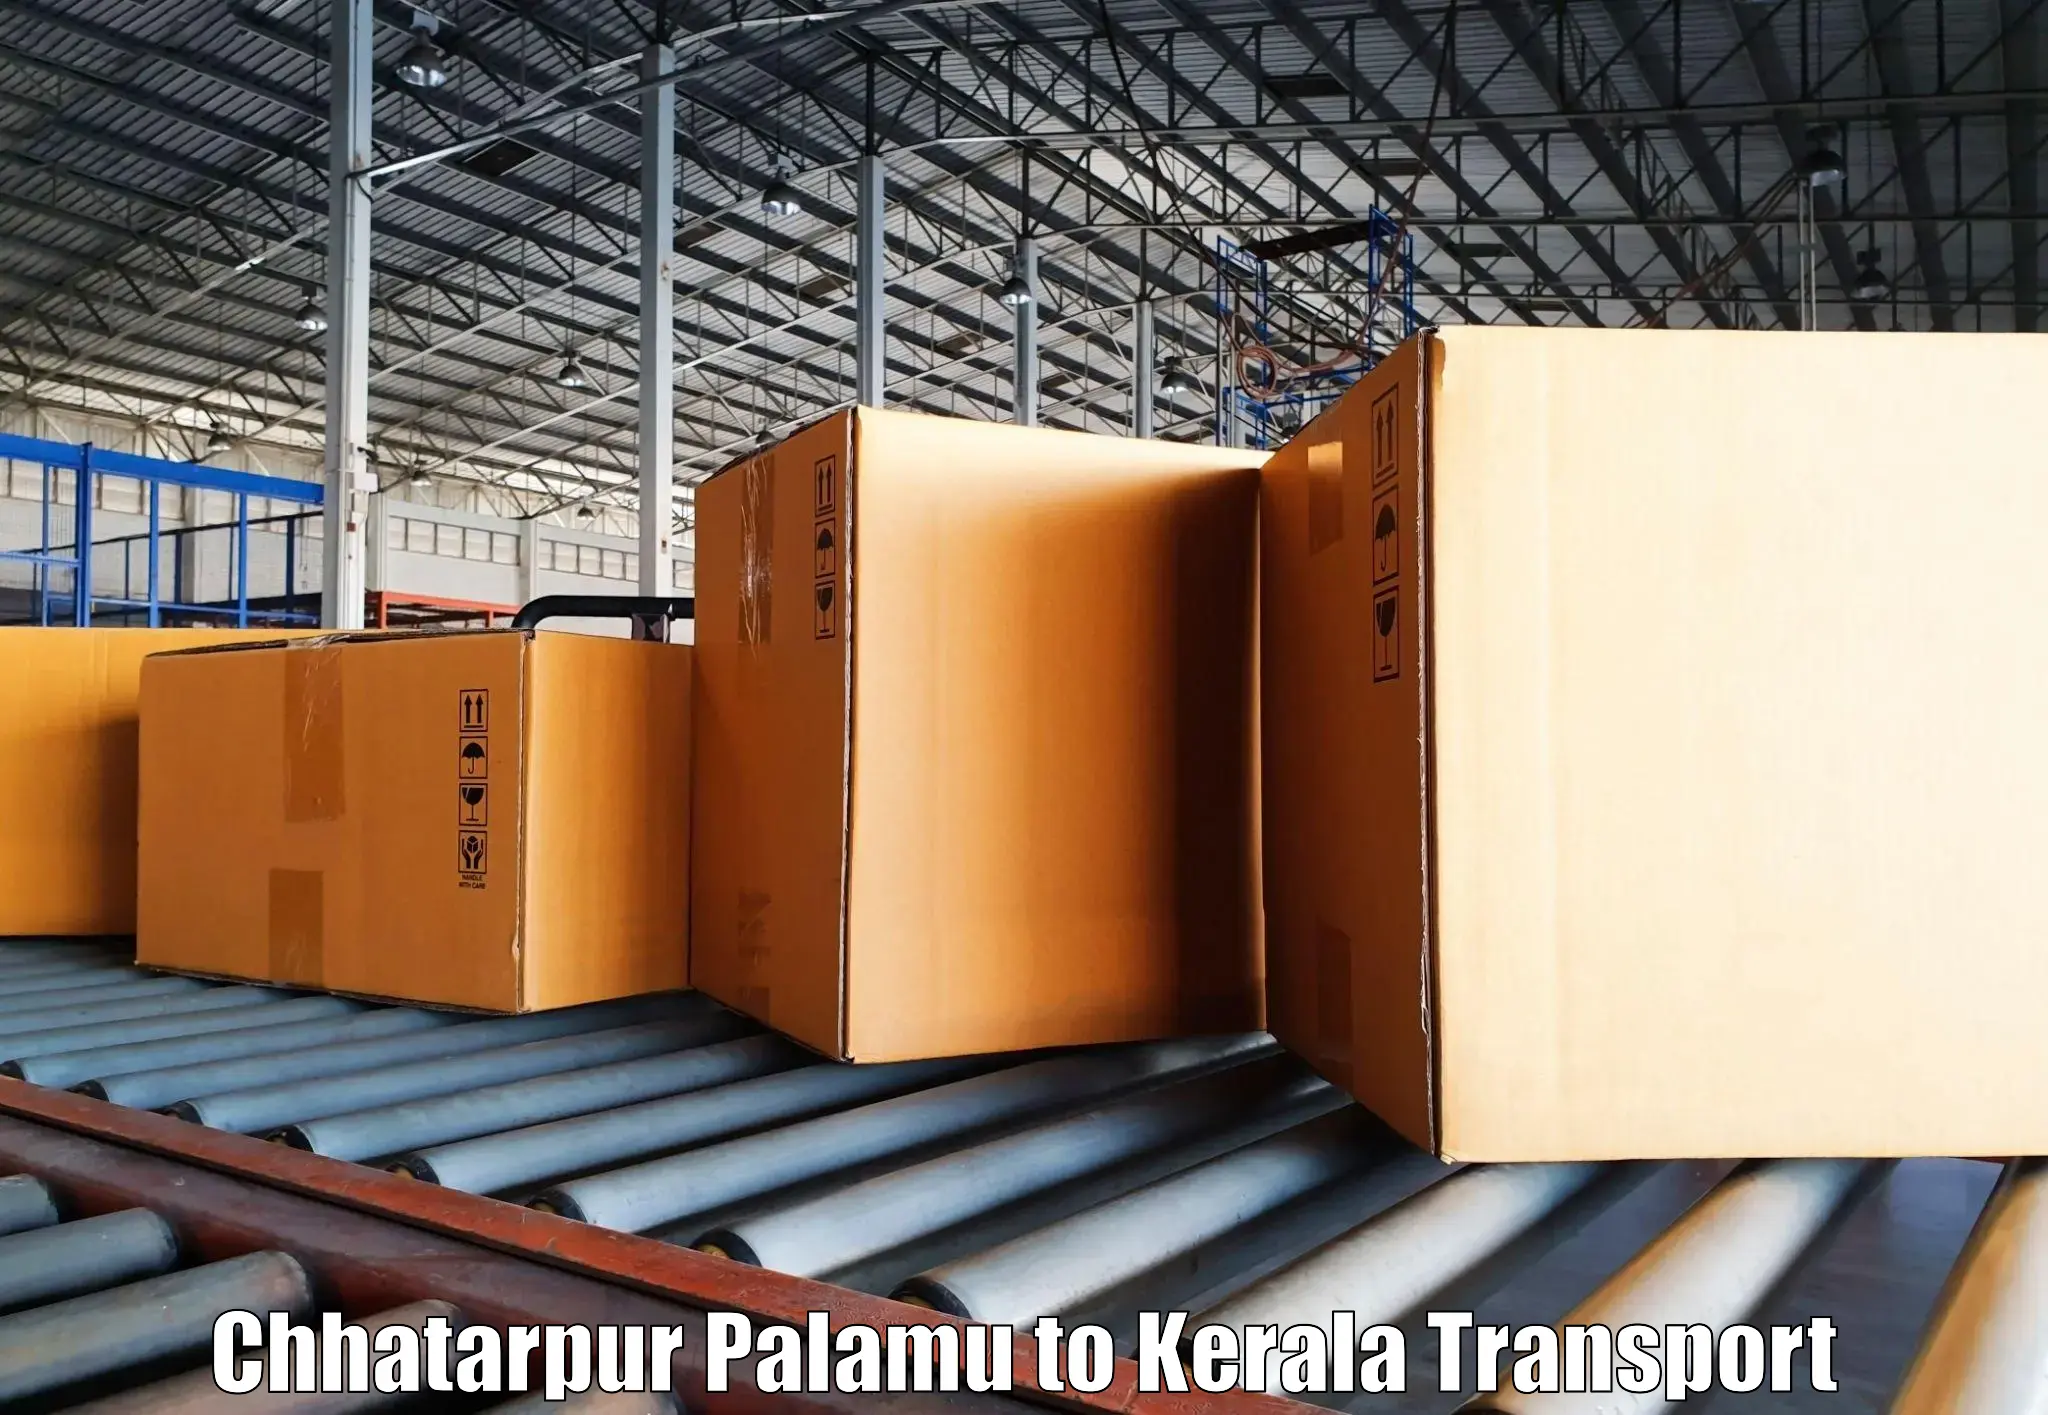 Intercity transport Chhatarpur Palamu to Kerala